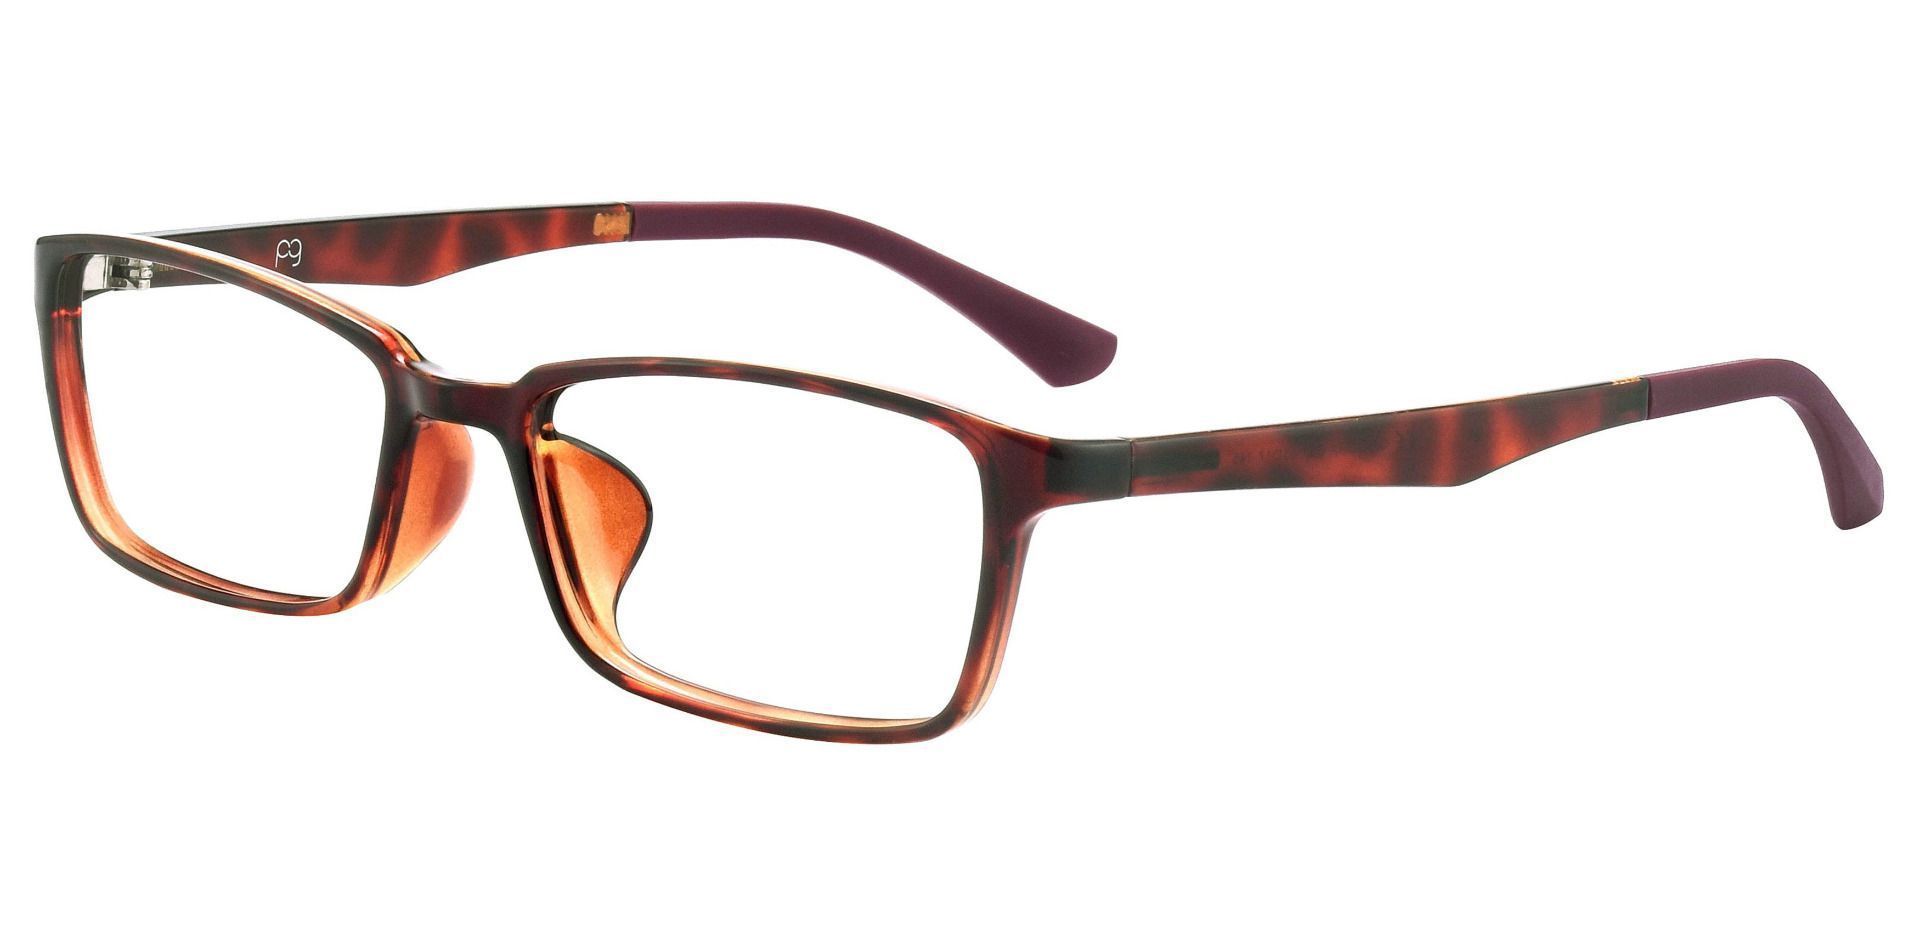 Sampson Rectangle Eyeglasses Frame - Red